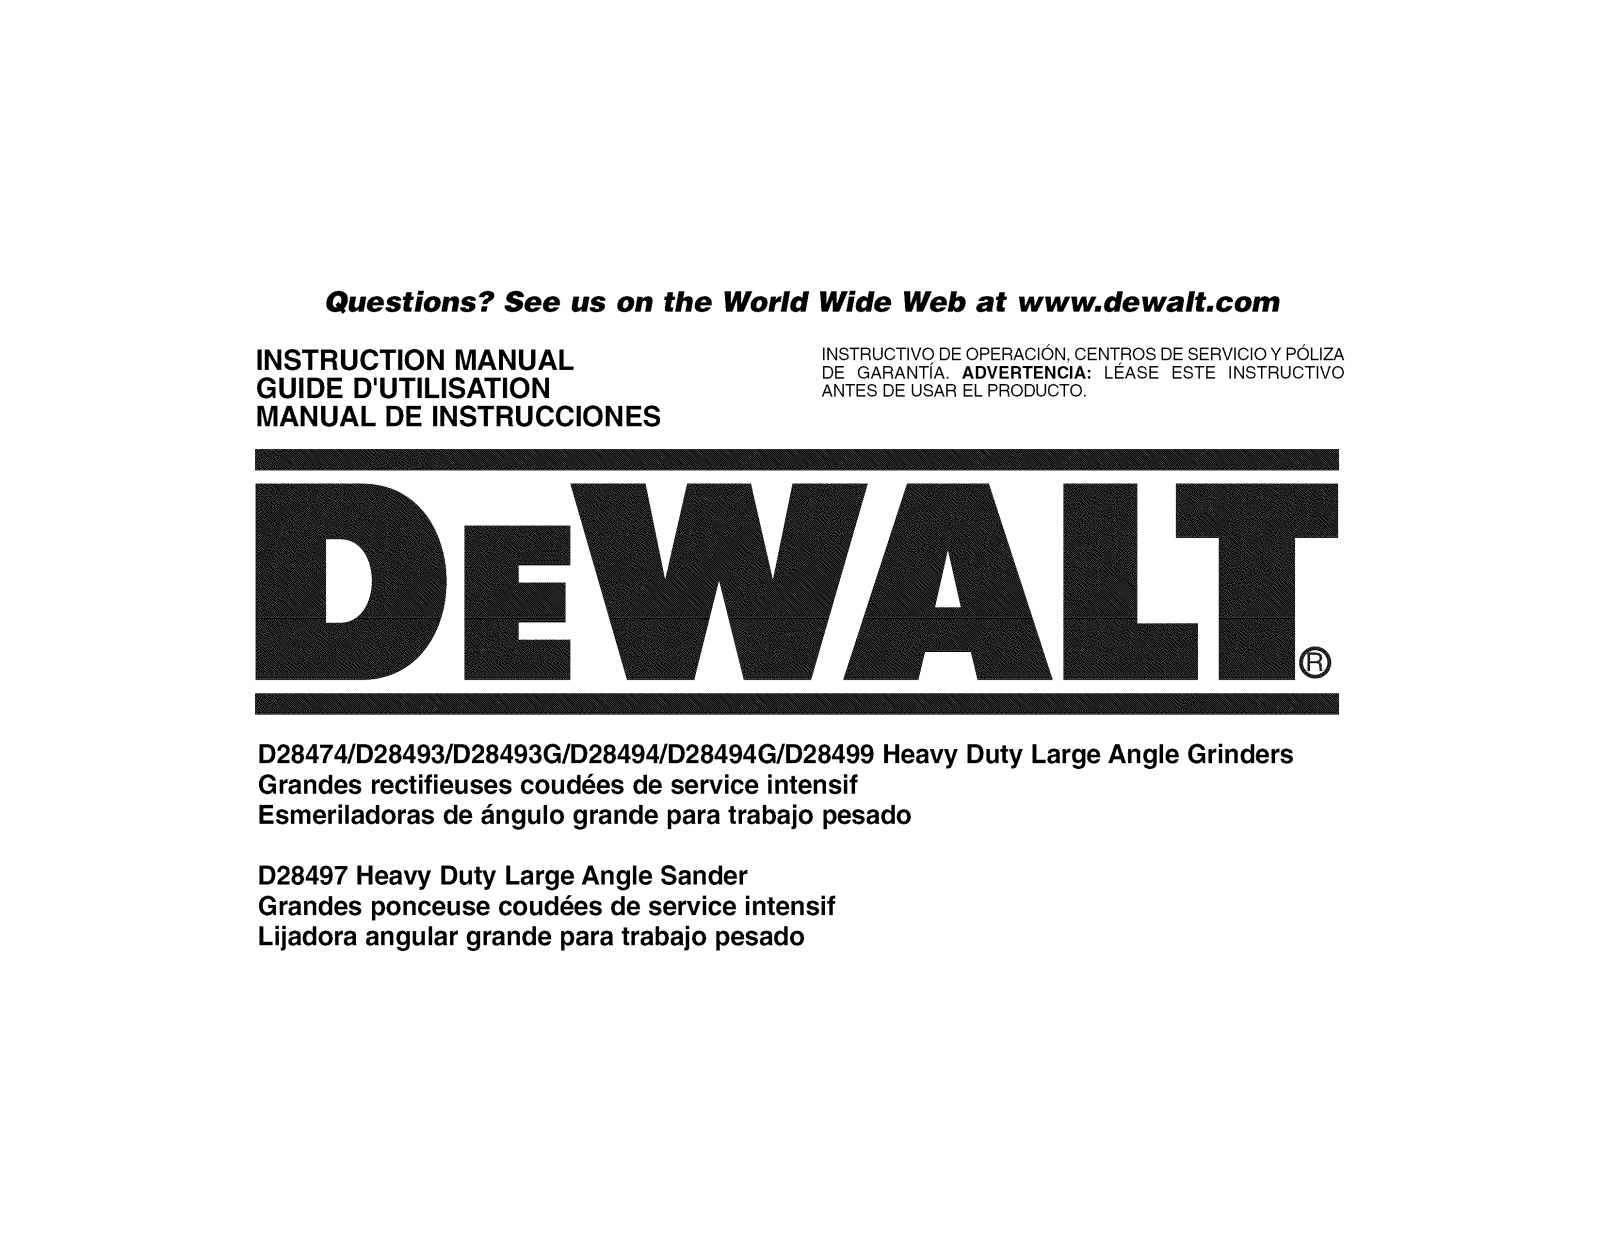 DeWalt D28494N TYPE 3, D28494N TYPE 2 Owner’s Manual